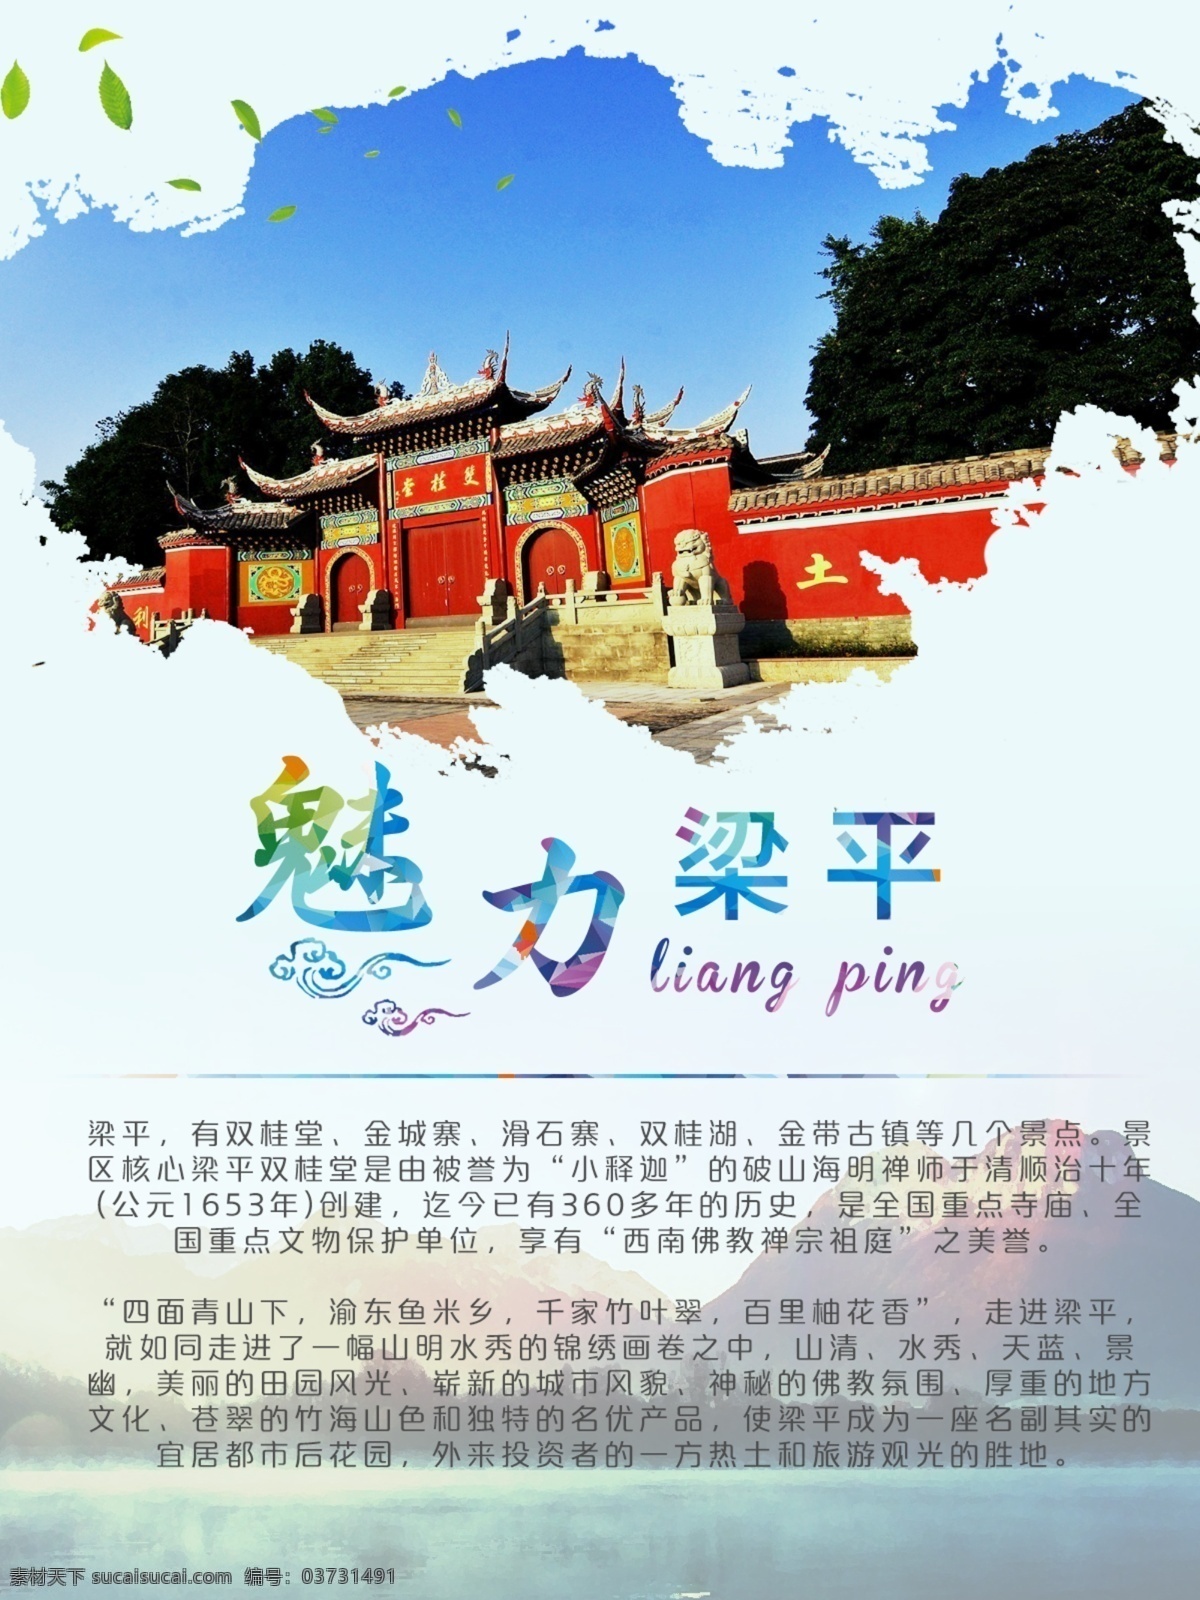 旅游 魅力lp 梁平 海报 旅游海报 旅游宣传 宣传海报